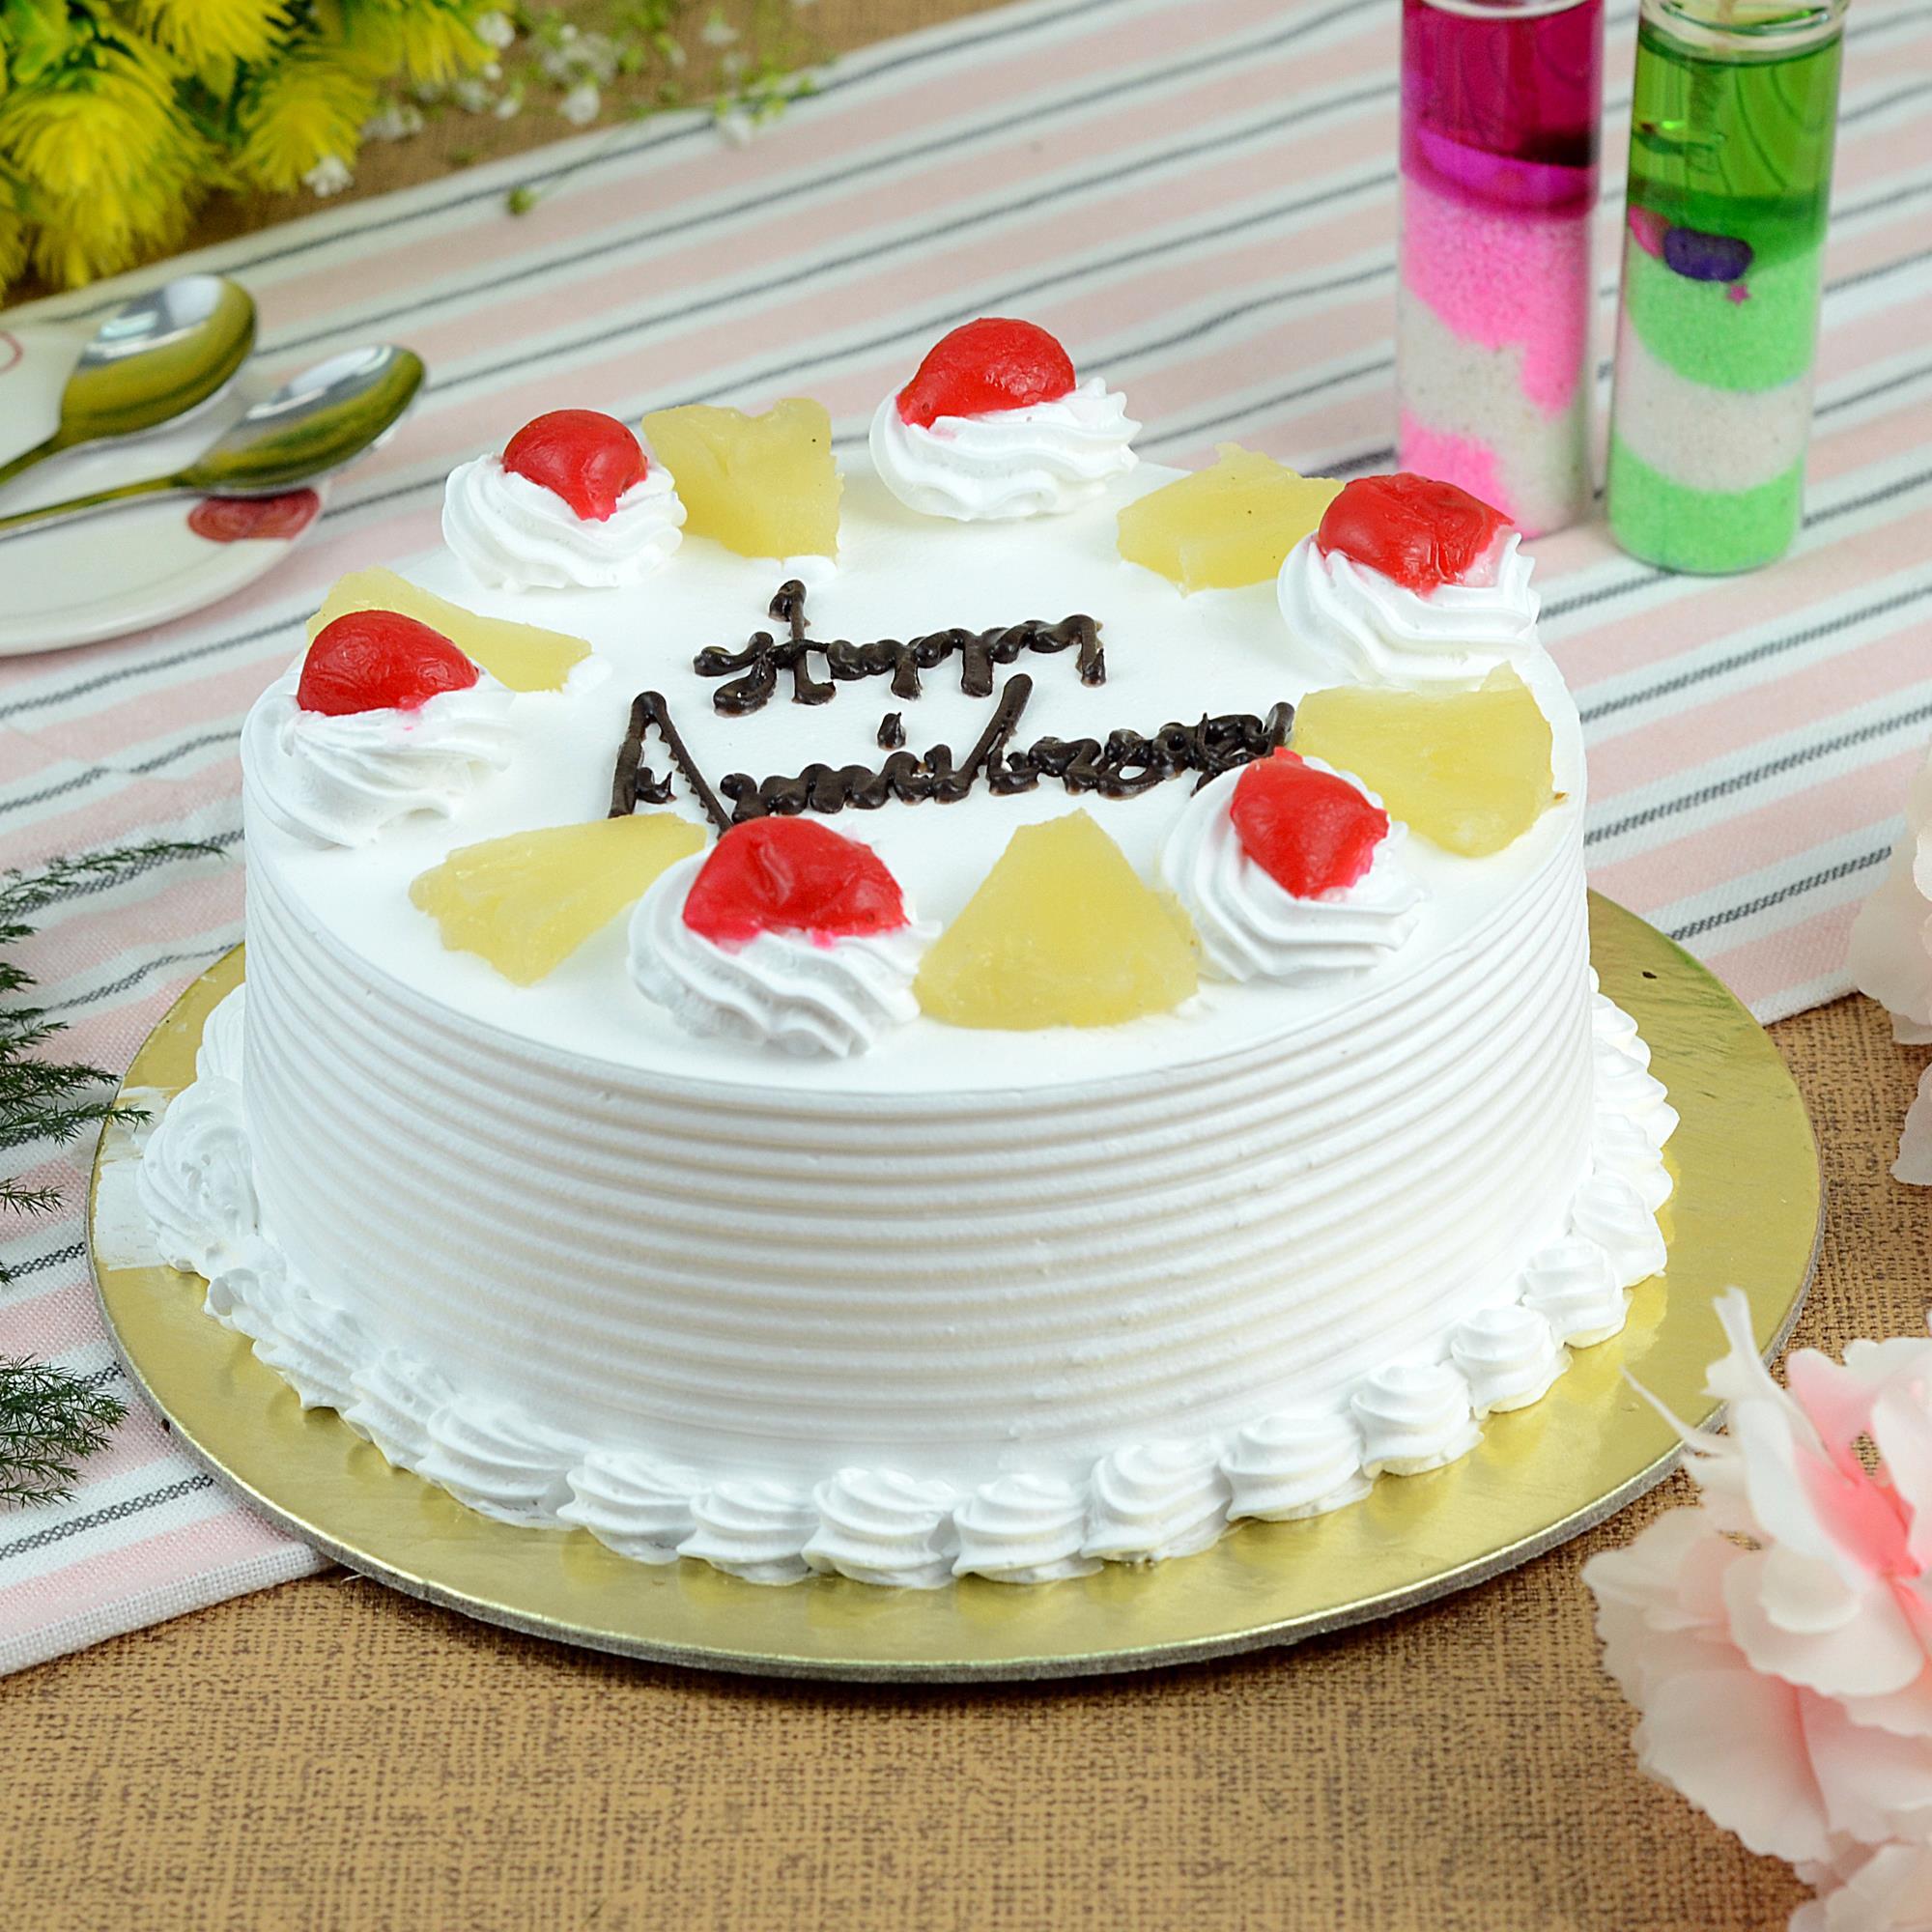 Anniversary Pineapple Cake- 1/2 Kg